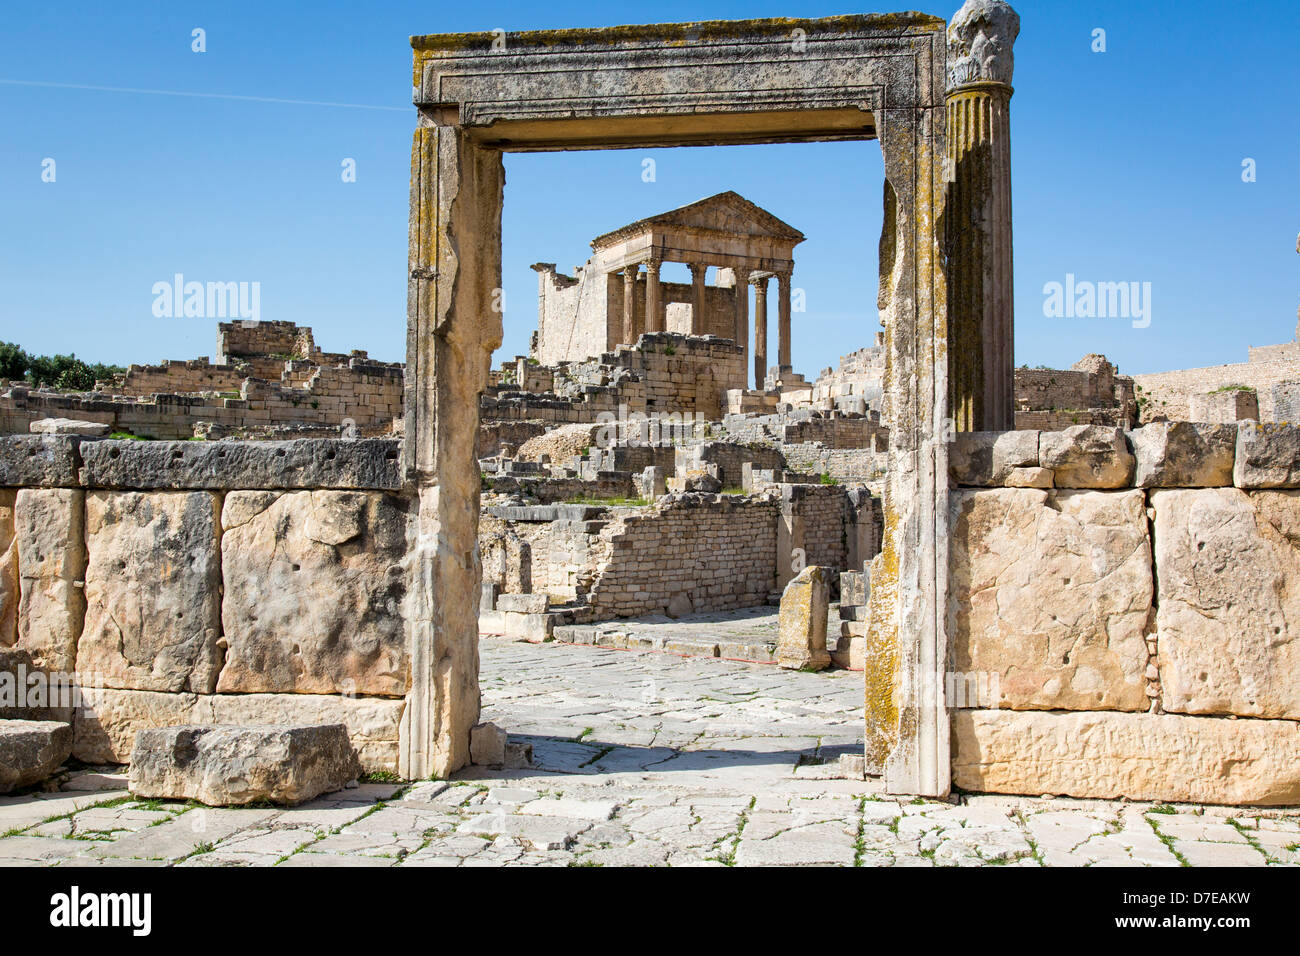 Le Capitole Temple en ruines romaines de Dougga en Tunisie Banque D'Images